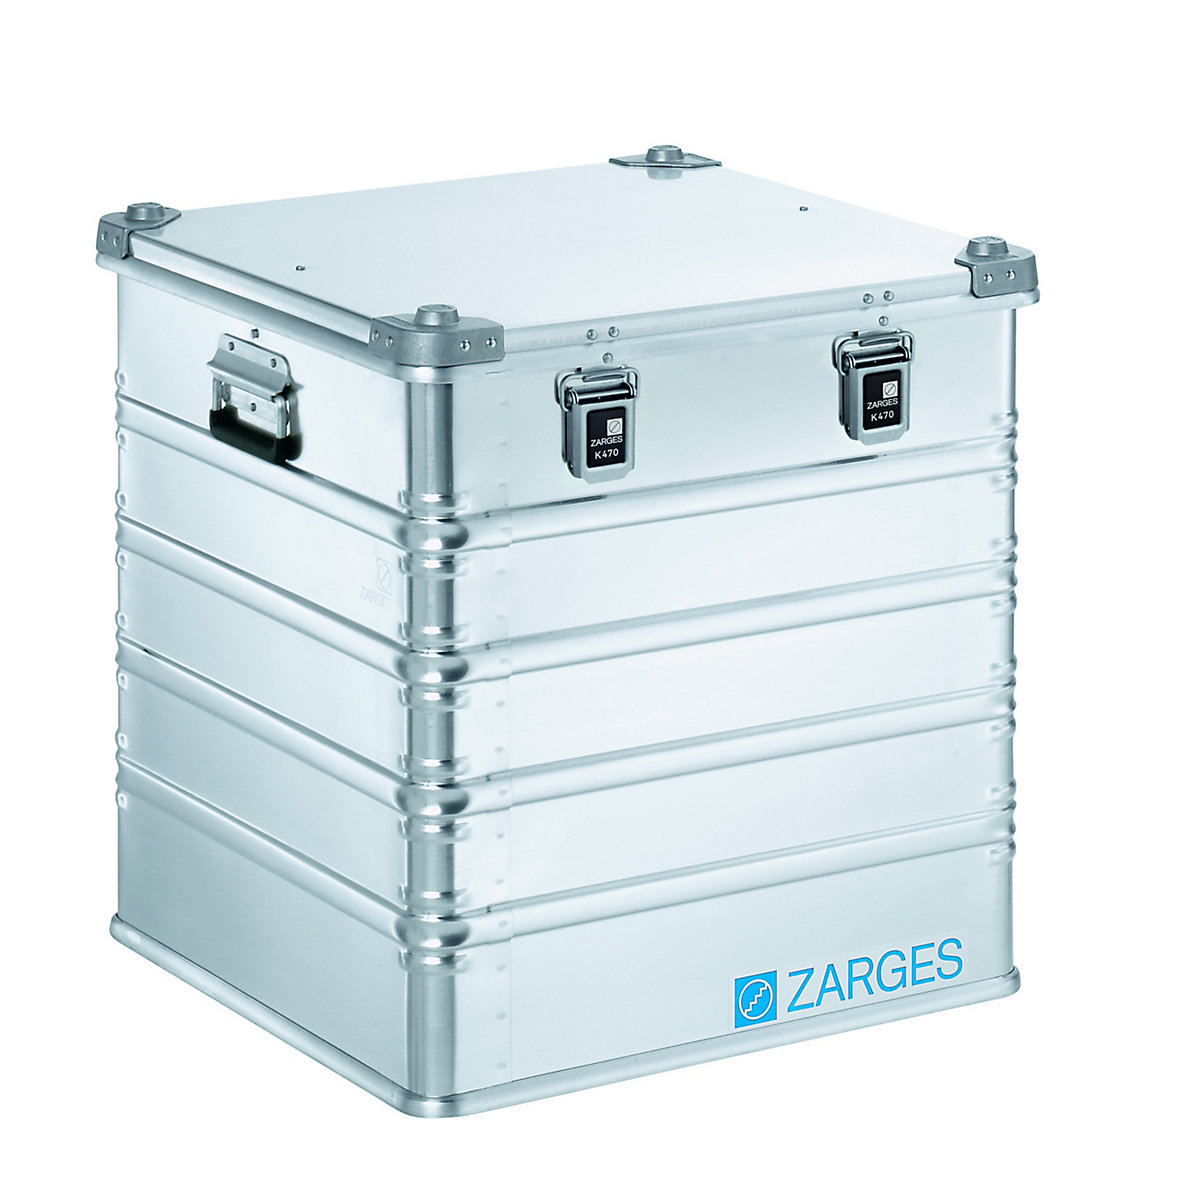 ZARGES – Aluminium transport case